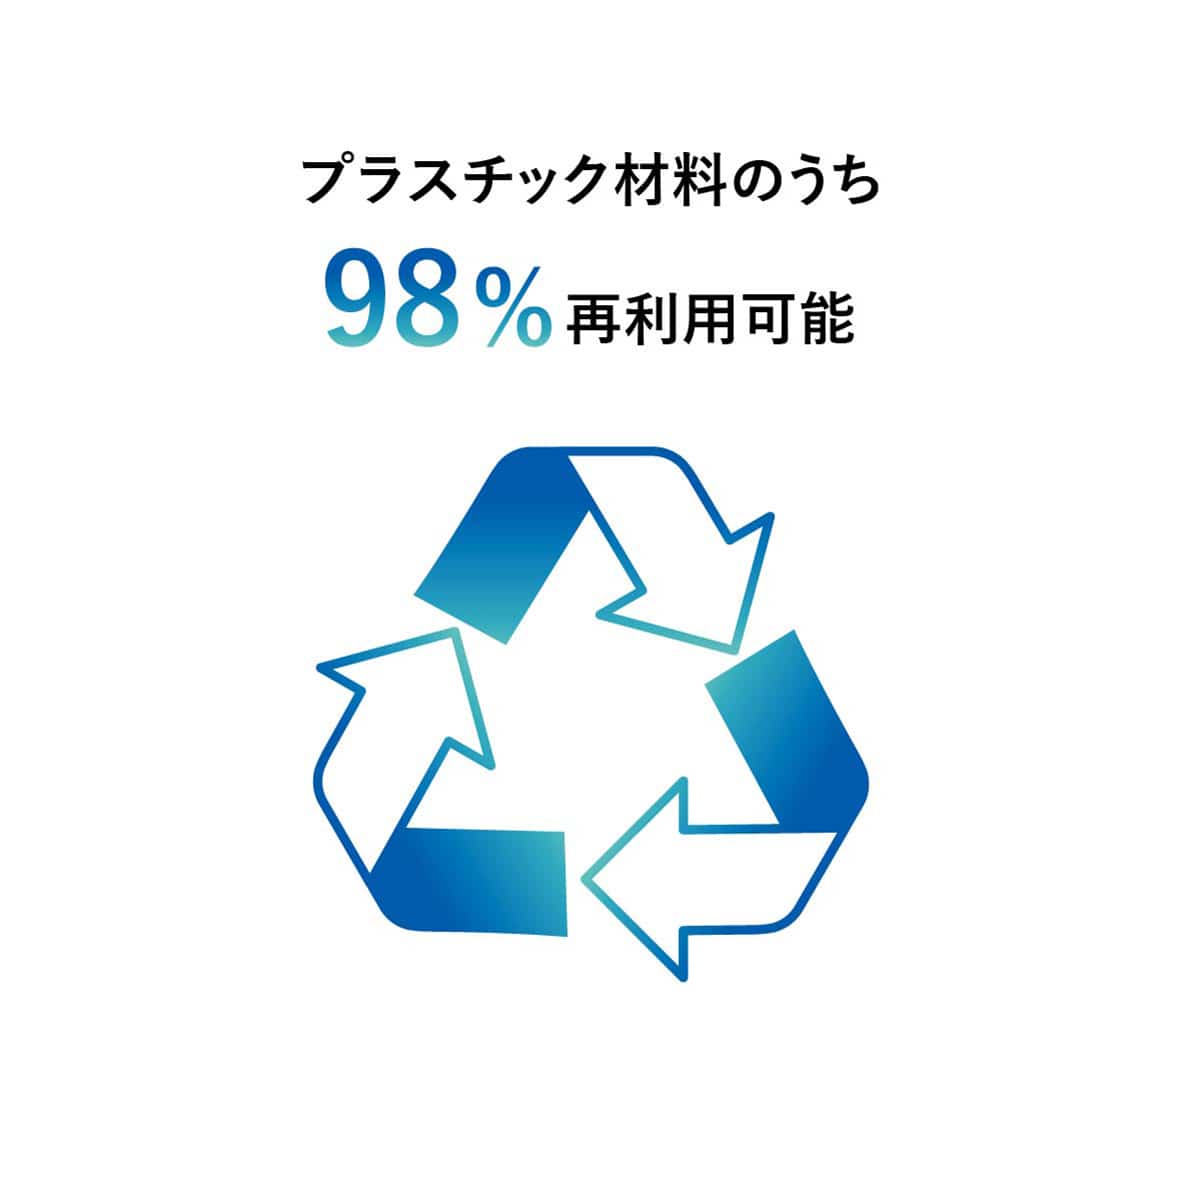 製品を構成するプラスチック材料のうち再利用可能材の構成比率98%